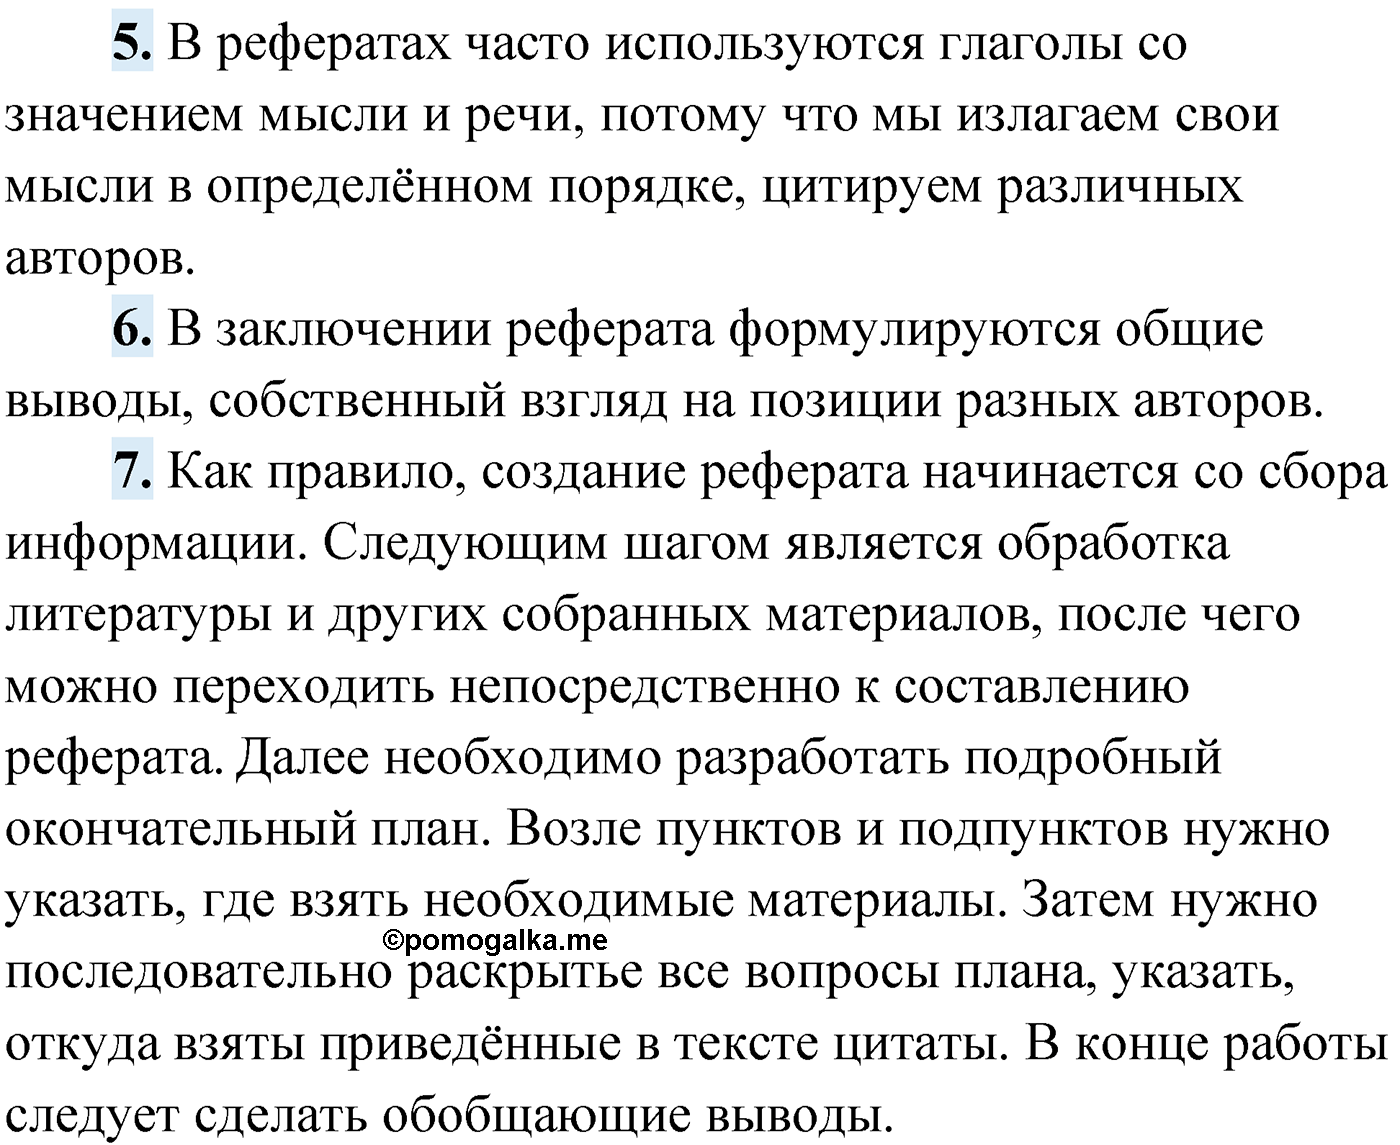 Проверь себя, Страница 214 русский язык 9 класс Мурина 2019 год